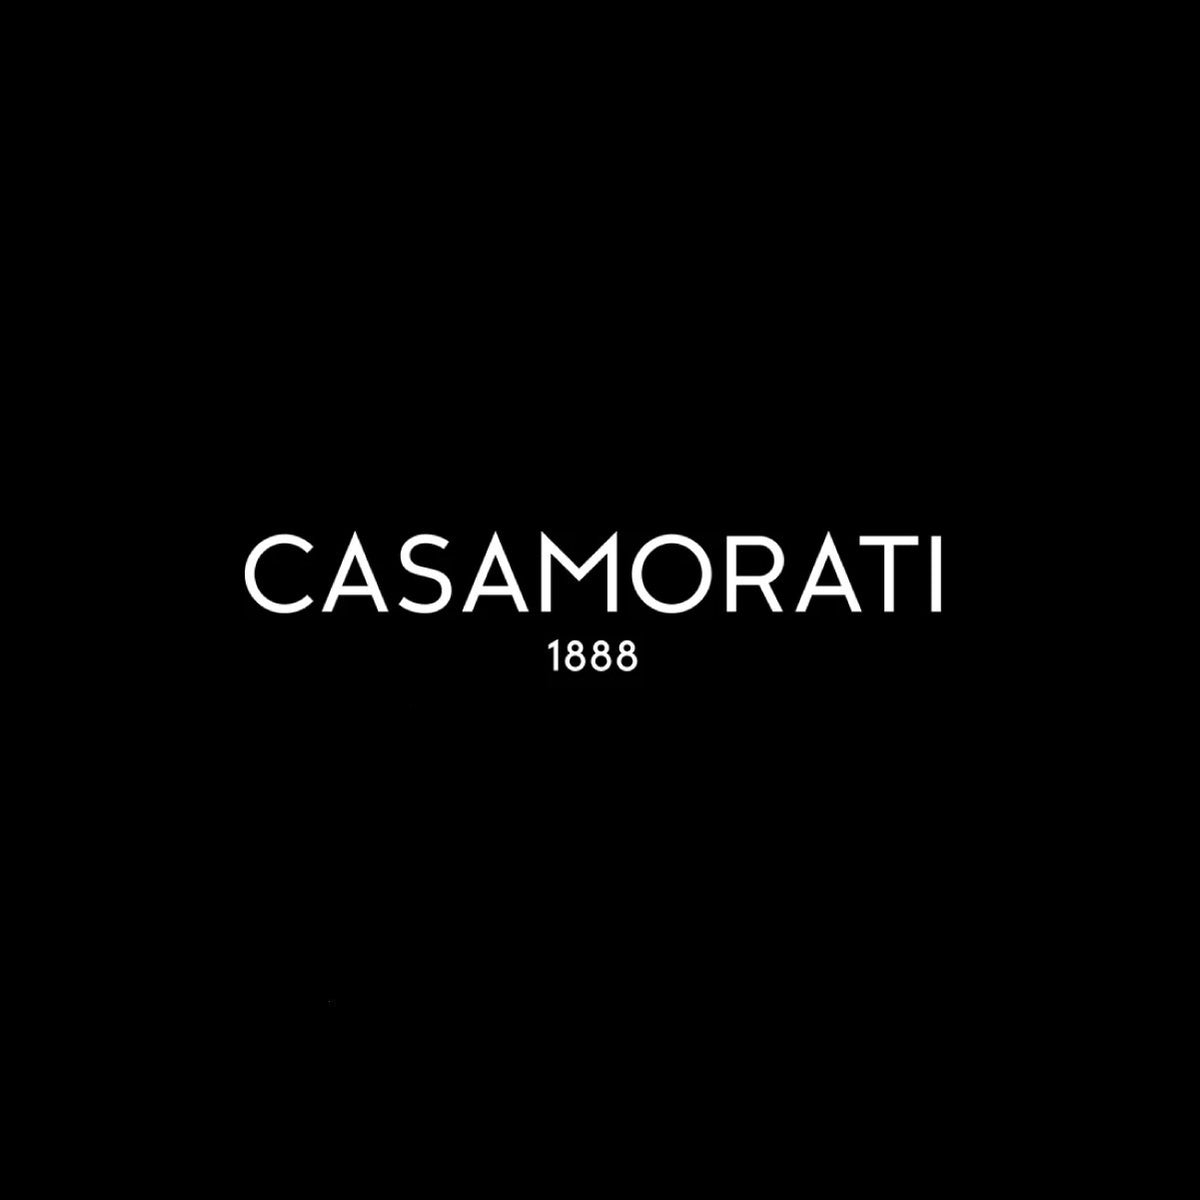 Casamorati